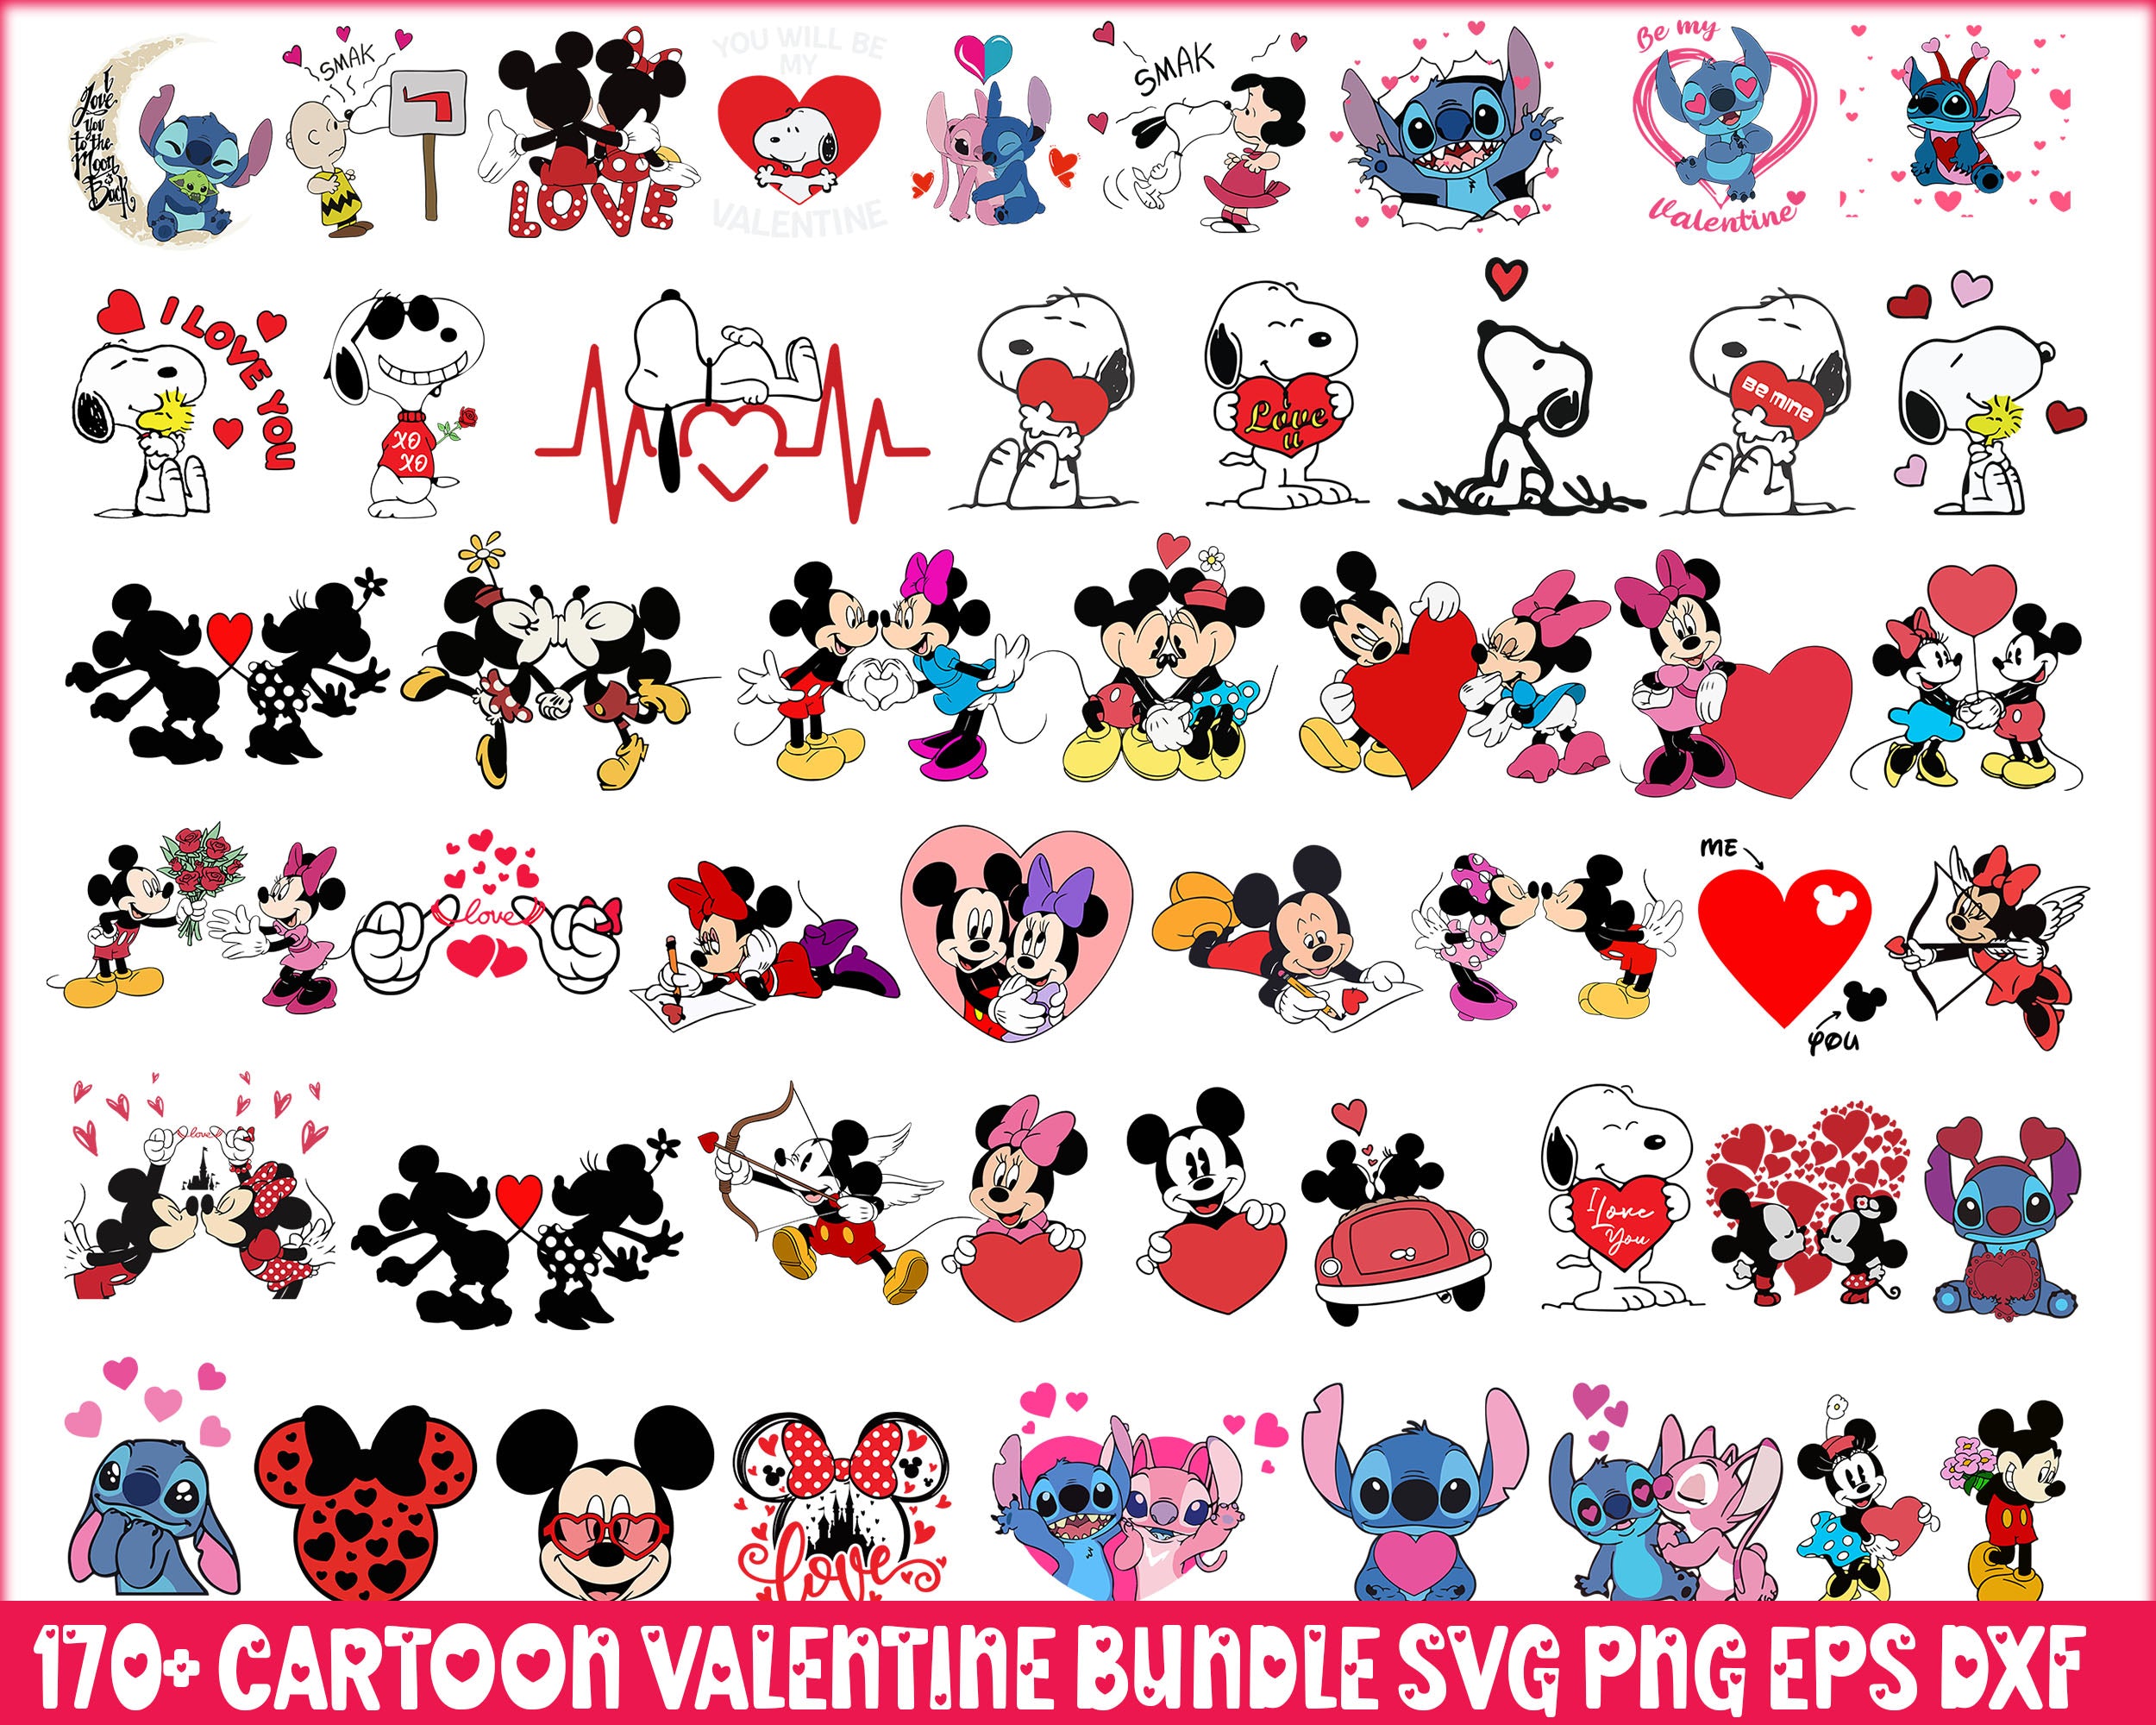 Updated 50+ Valentine Cartoon  Bundle, Valentine Stitch Svg, Valentine Movie Png, Valentine SVG Cut File, Digital Download